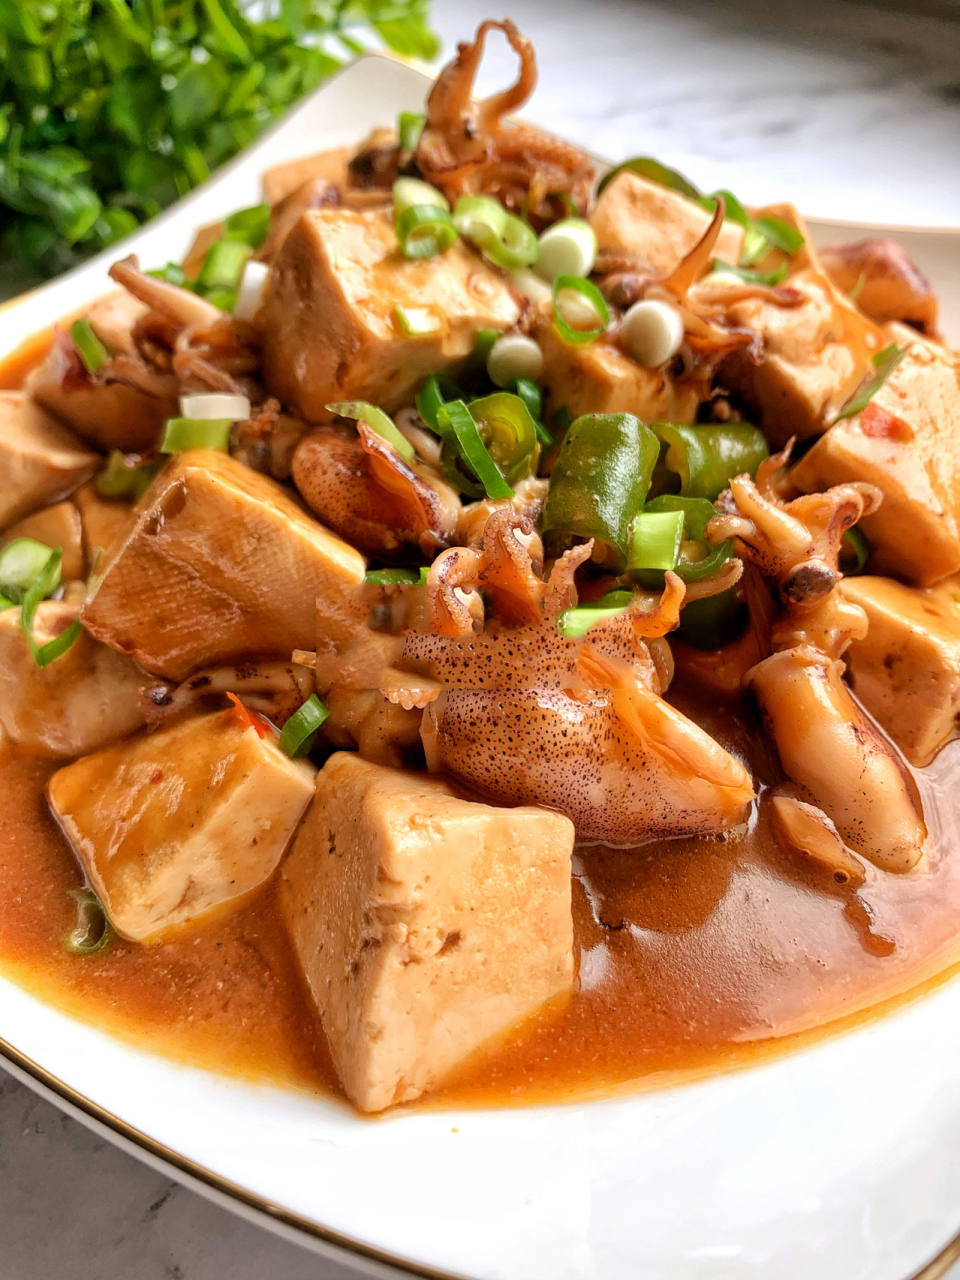 笔管鱼炖豆腐,可以这样做,营养鲜美 笔管鱼含优质蛋白质和矿物质,和